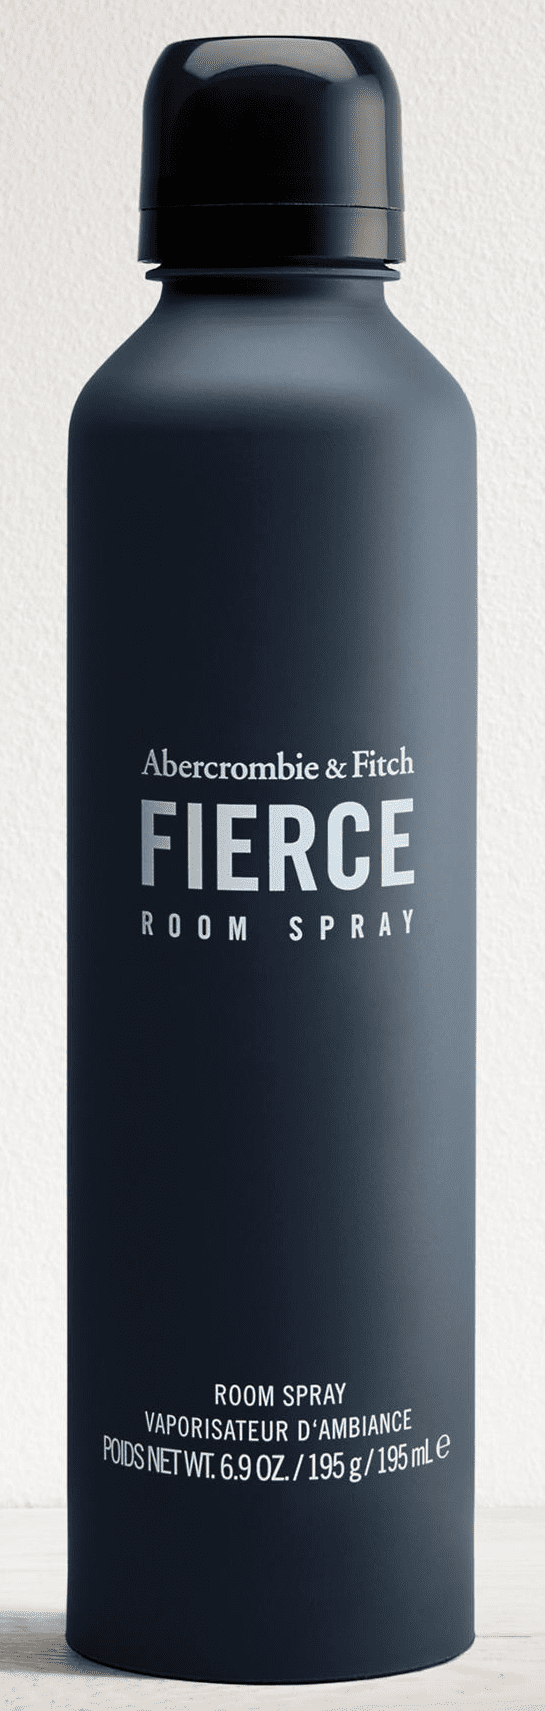 abercrombie room spray